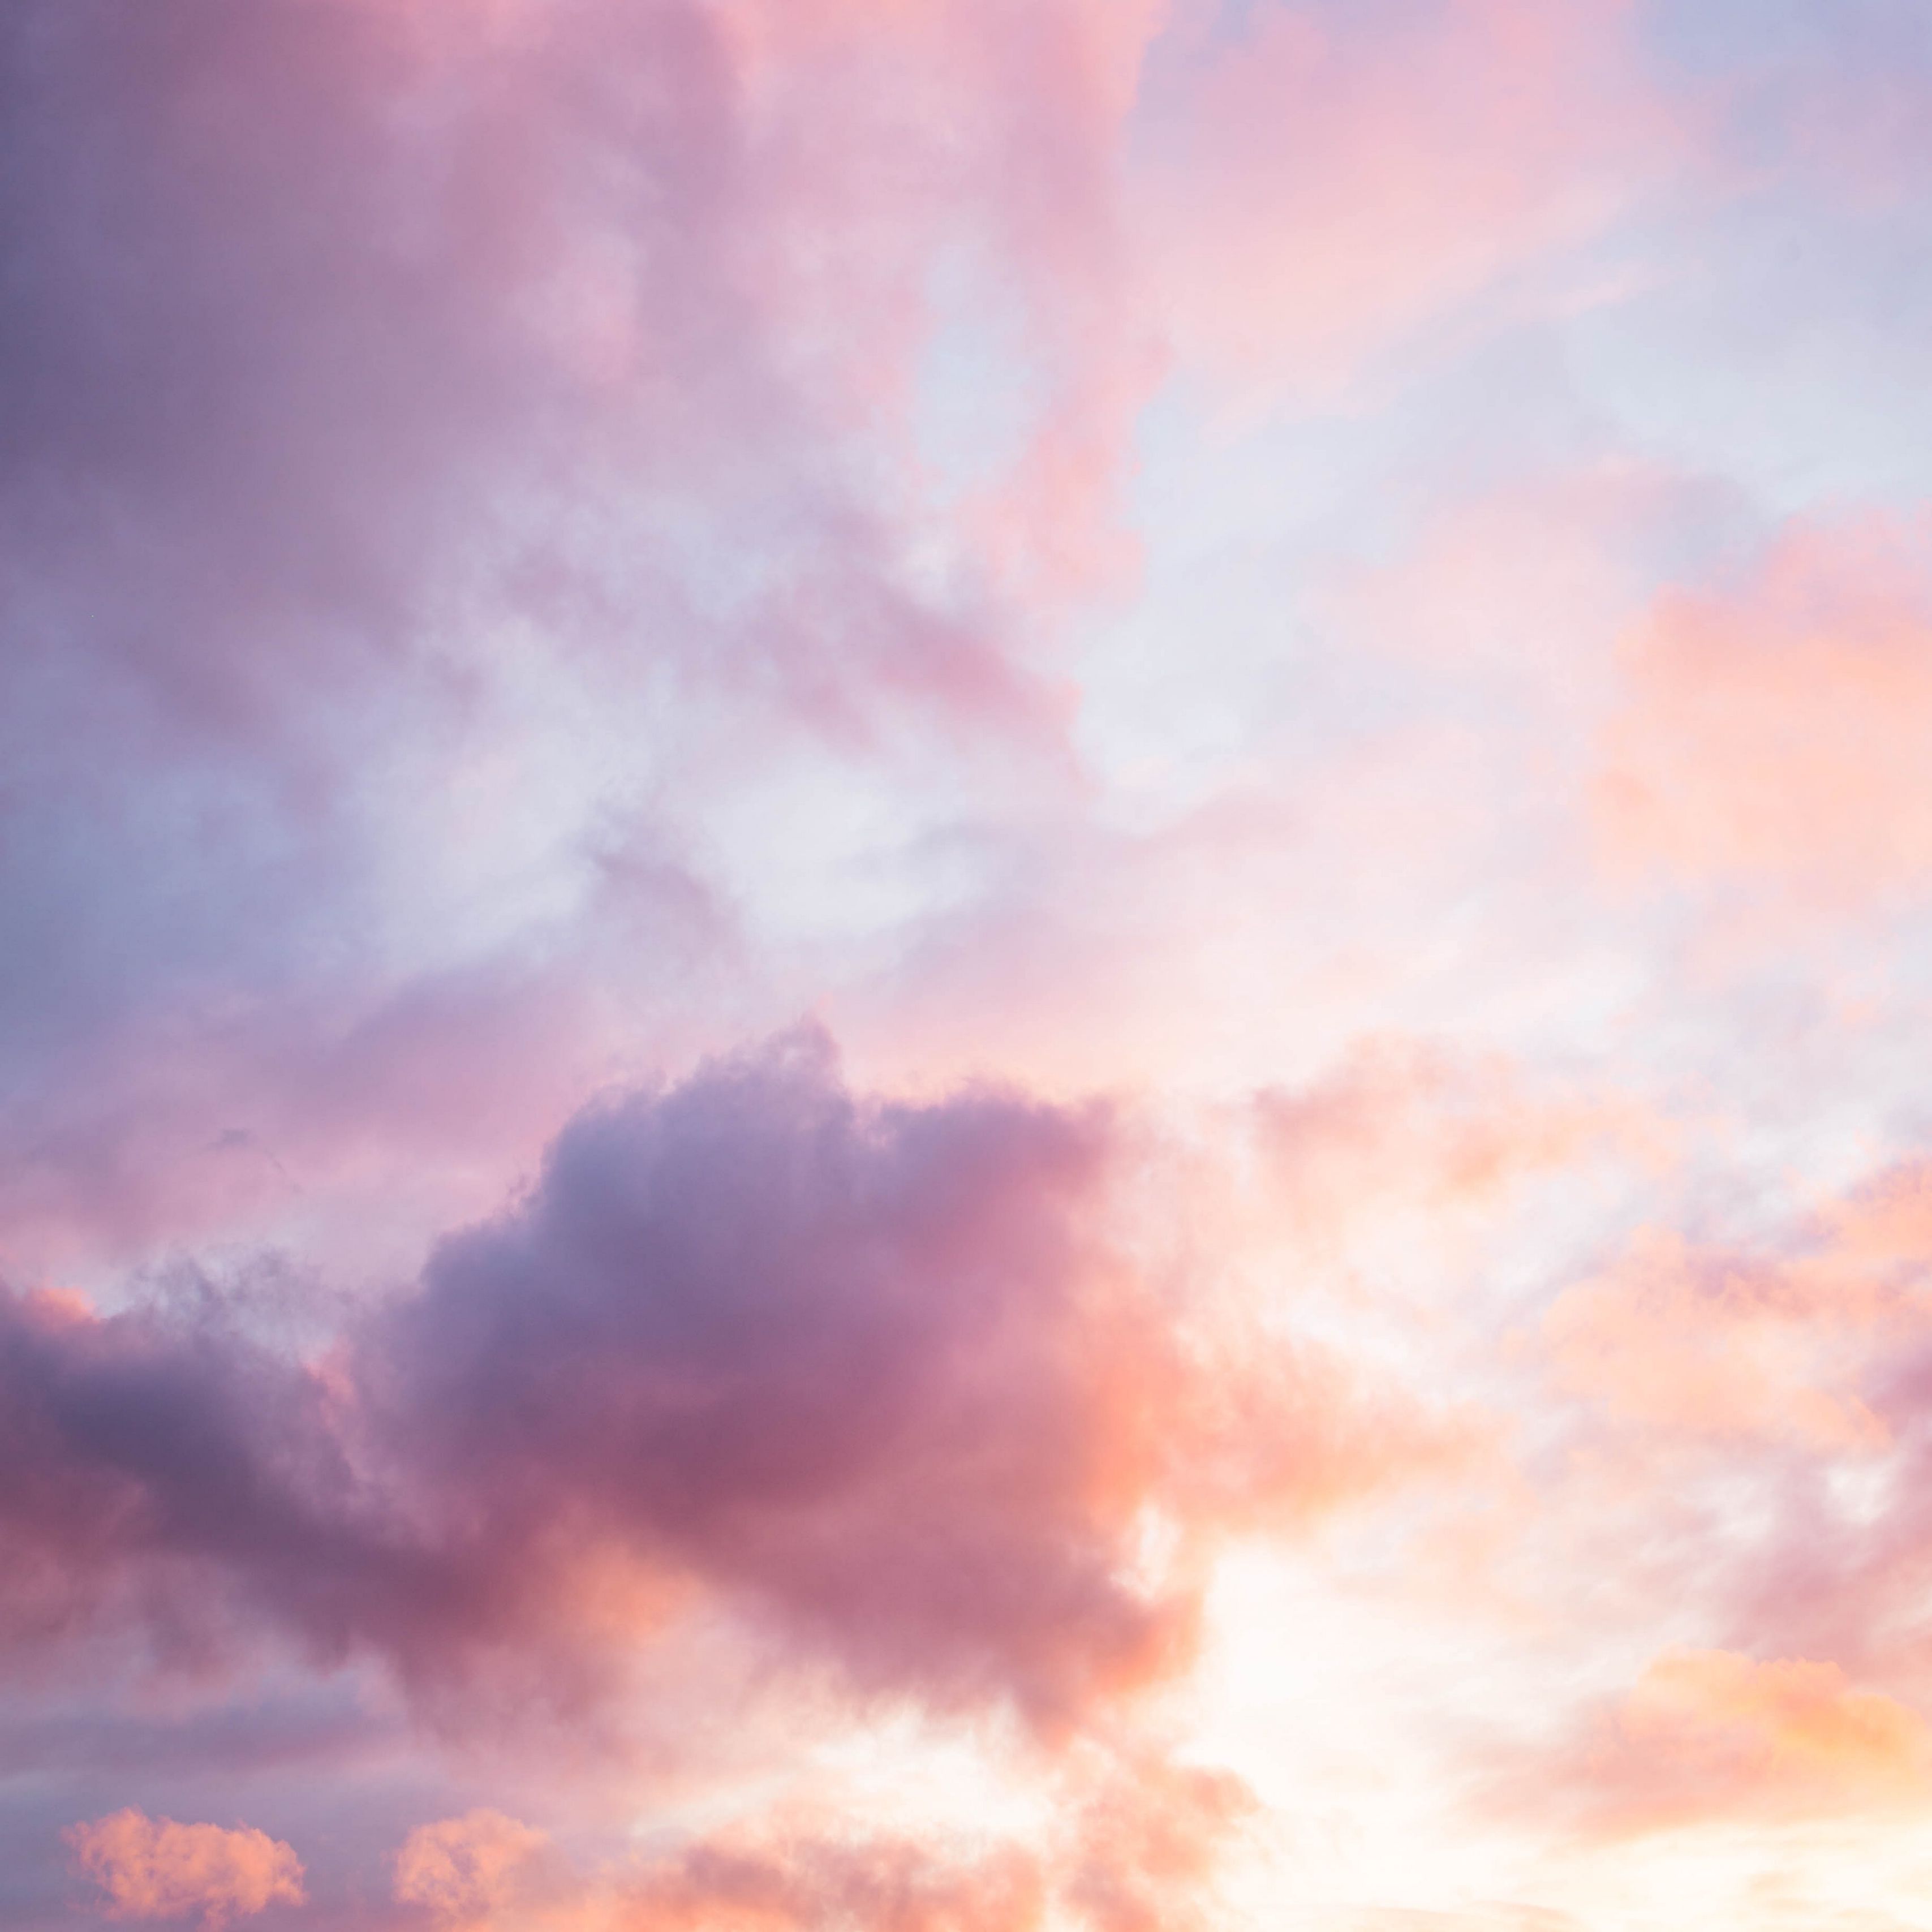 Hình nền hoàng hôn bầu trời hồng sẽ khiến cho bạn bay bổng vào một khung cảnh đẹp như trong tranh vẽ. Với sắc hồng du dương xen kẽ giữa ánh nắng và mây trời, cuộc sống trở nên rực rỡ hơn bao giờ hết.